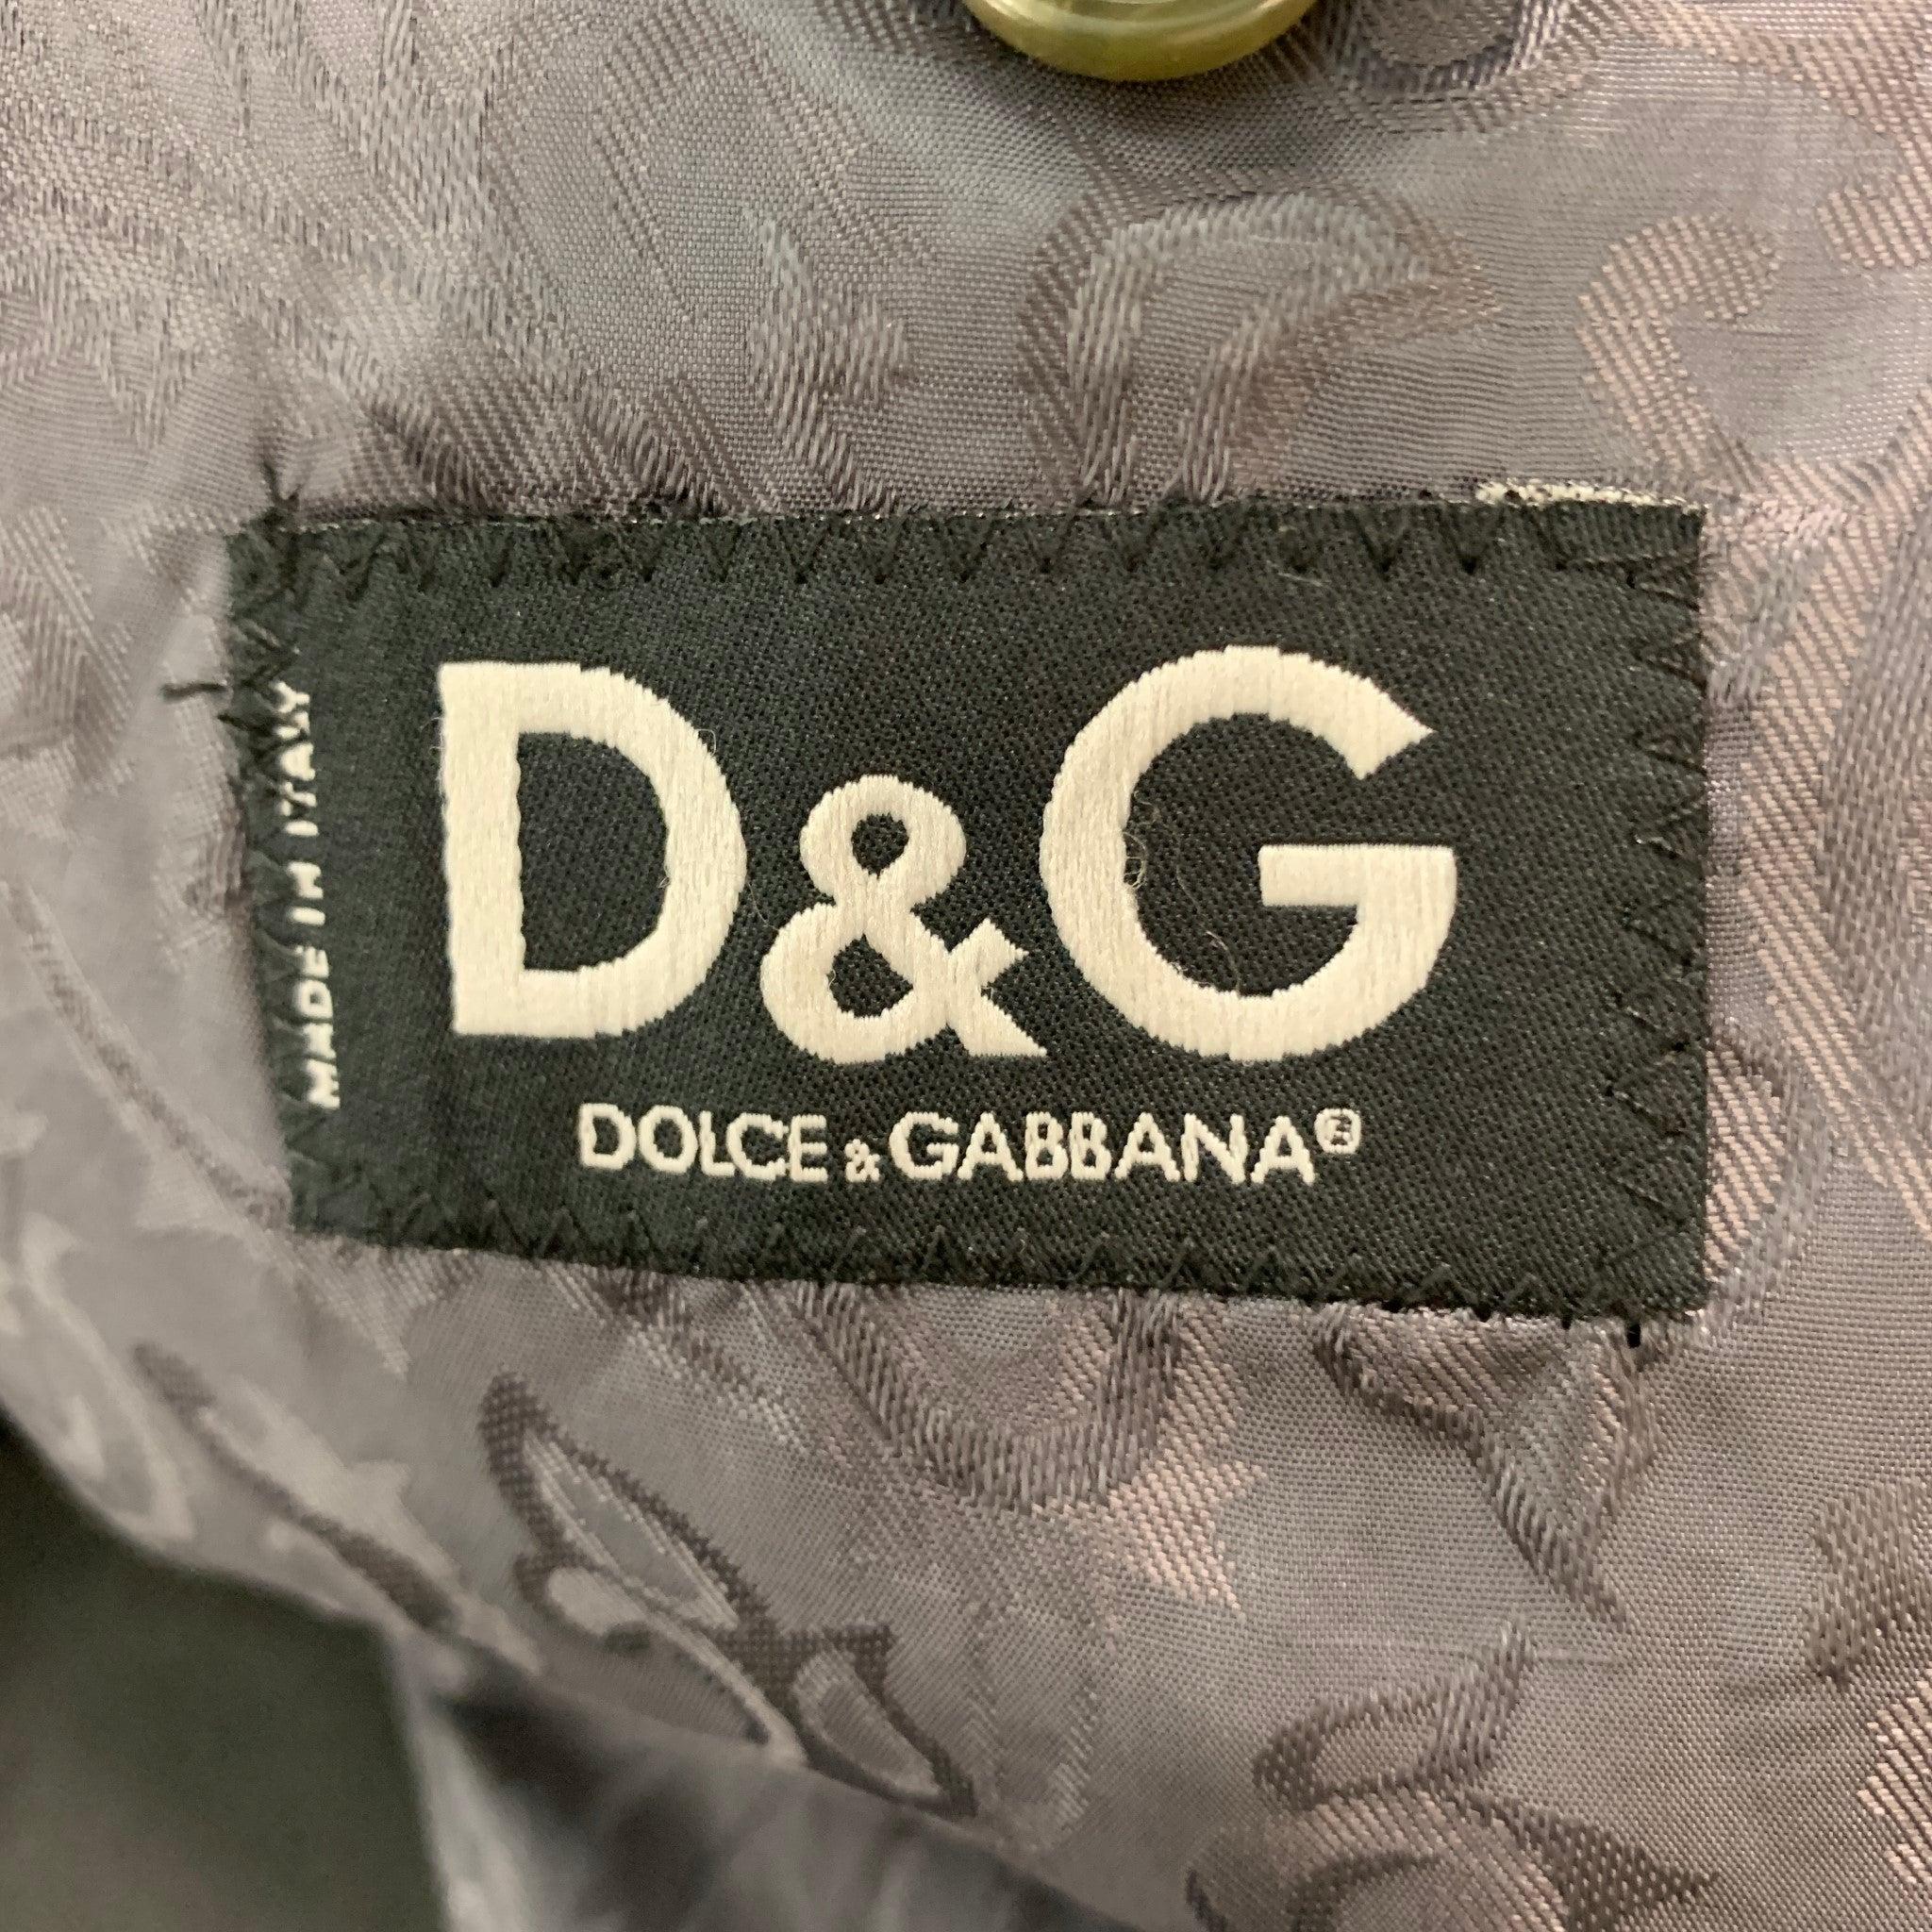 D&G by DOLCE & GABBANA Manteau de sport en velours de coton vert et noir Taille 38 1